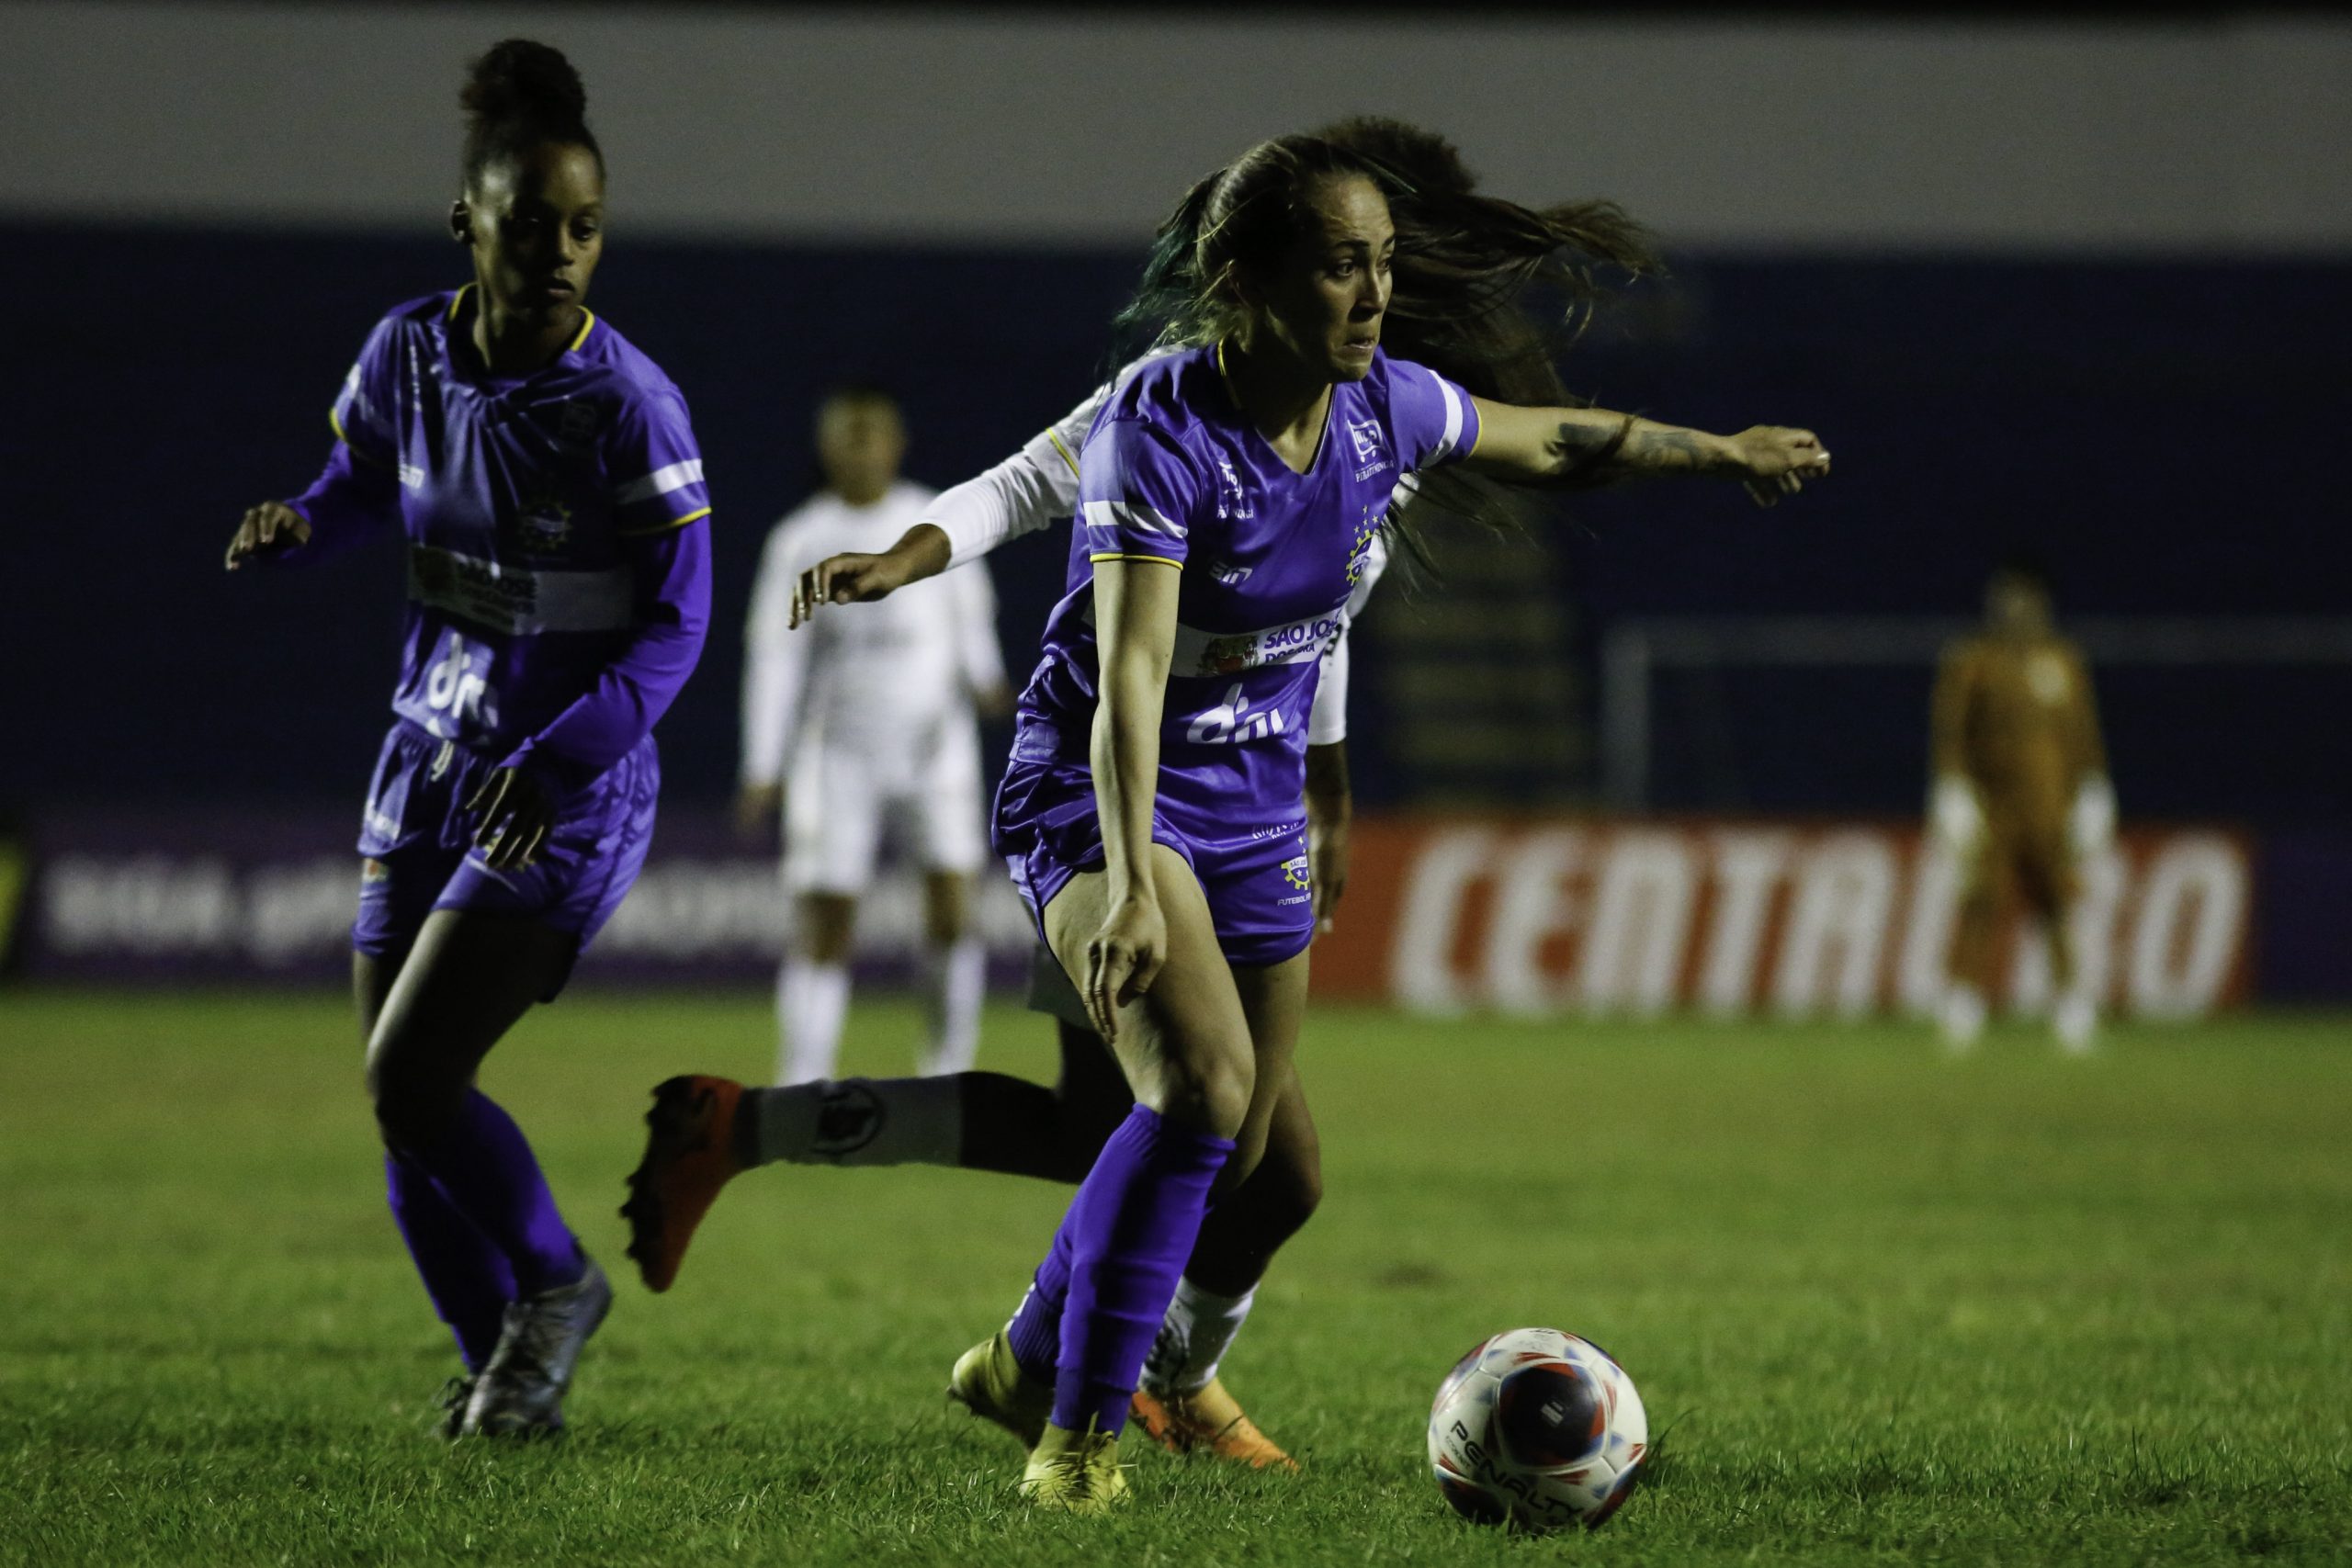 São José é superado pelo Santos na terceira rodada do Campeonato Paulista  Feminino - São José Esporte Clube